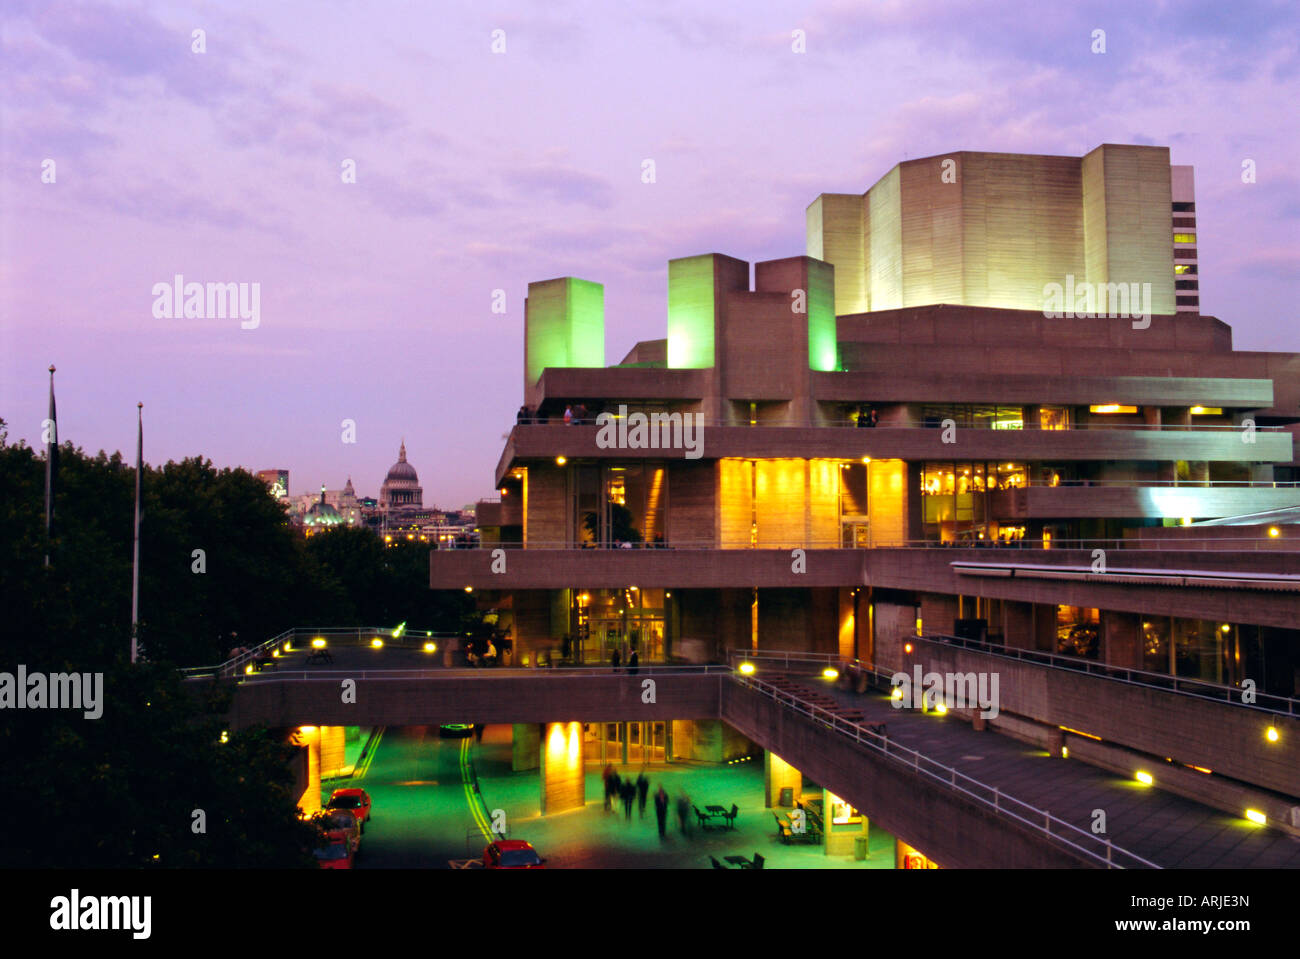 Le Théâtre National dans la soirée, South Bank, Londres, Angleterre, Royaume-Uni Banque D'Images